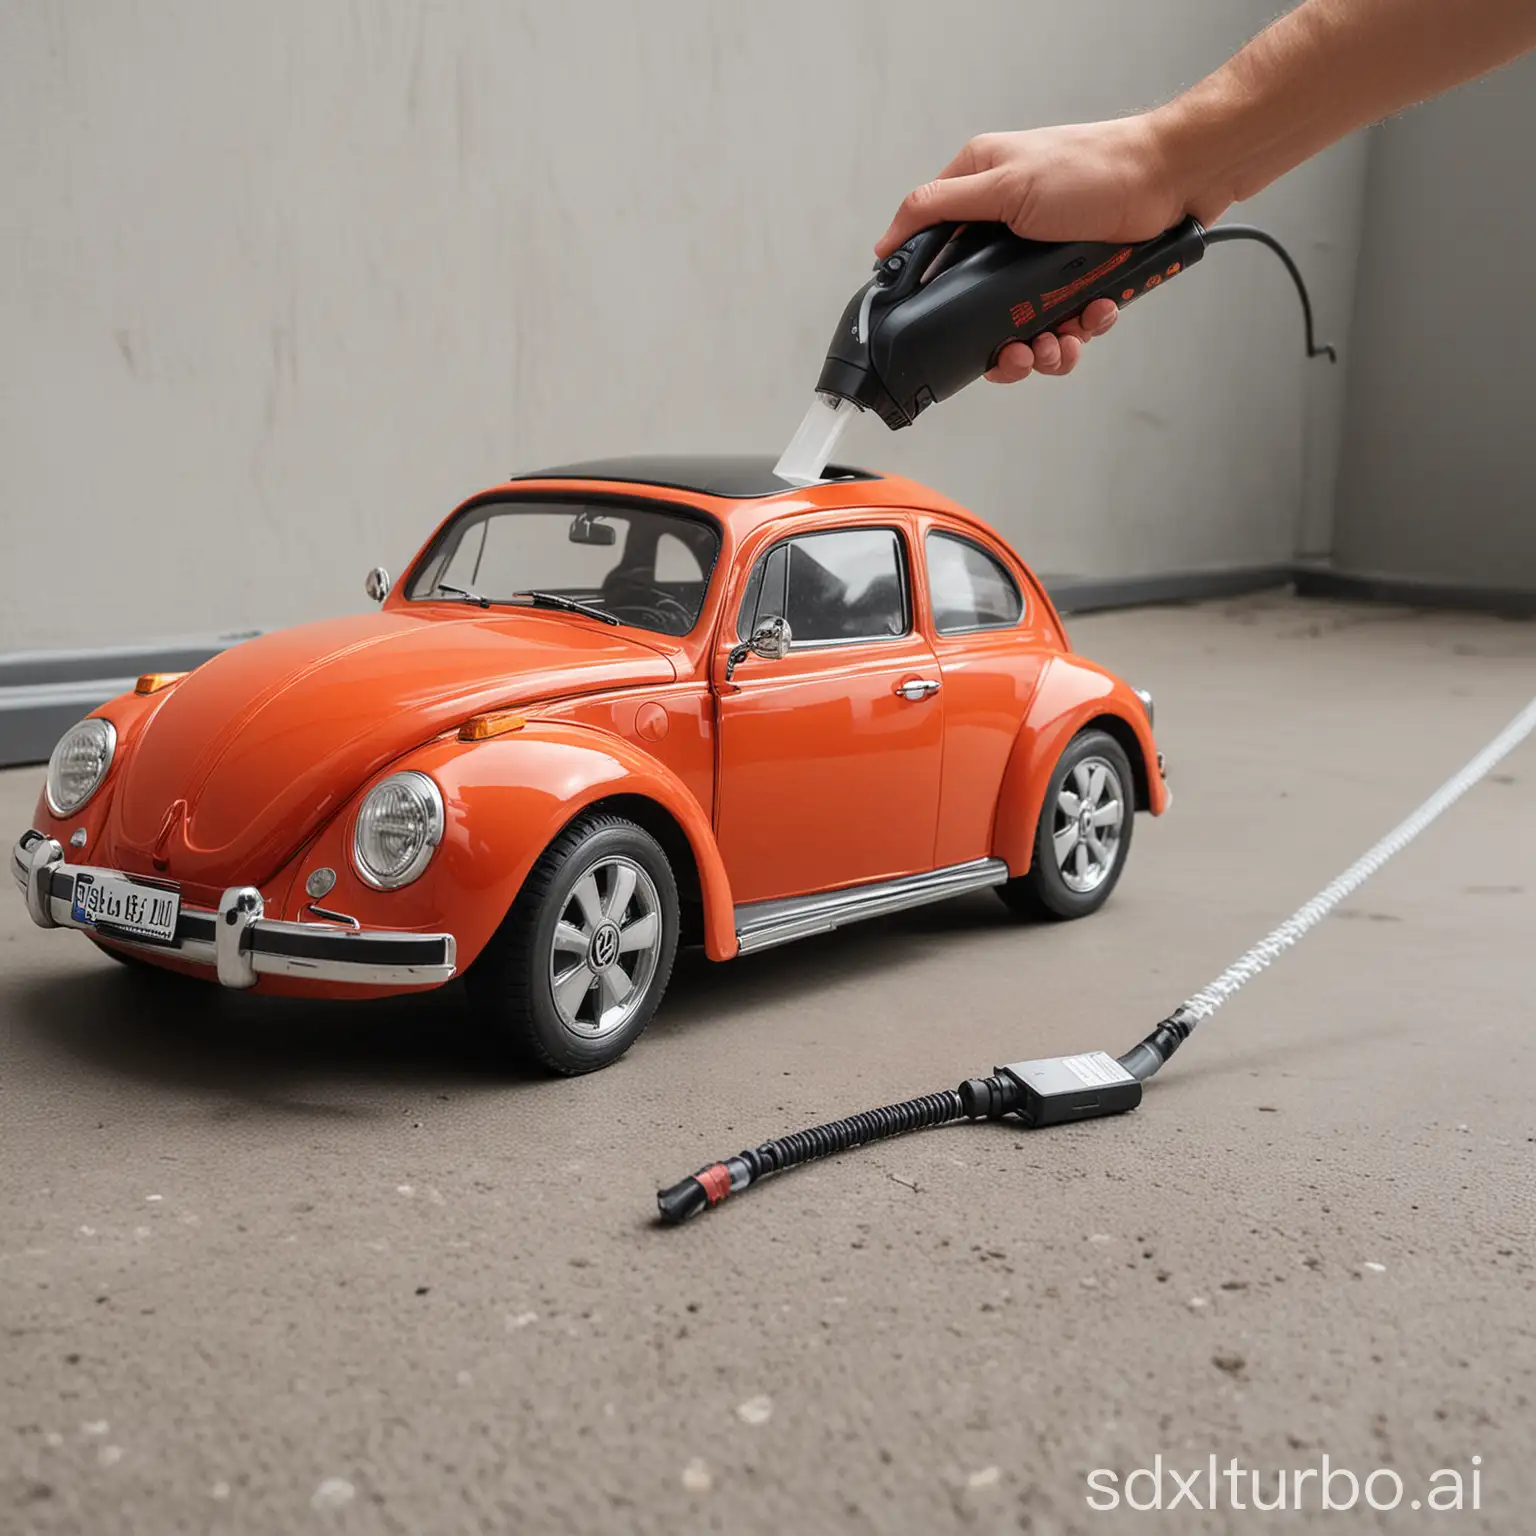 Volkswagen-Beetle-Front-Transformed-into-Handheld-Wireless-Car-Vacuum-Cleaner